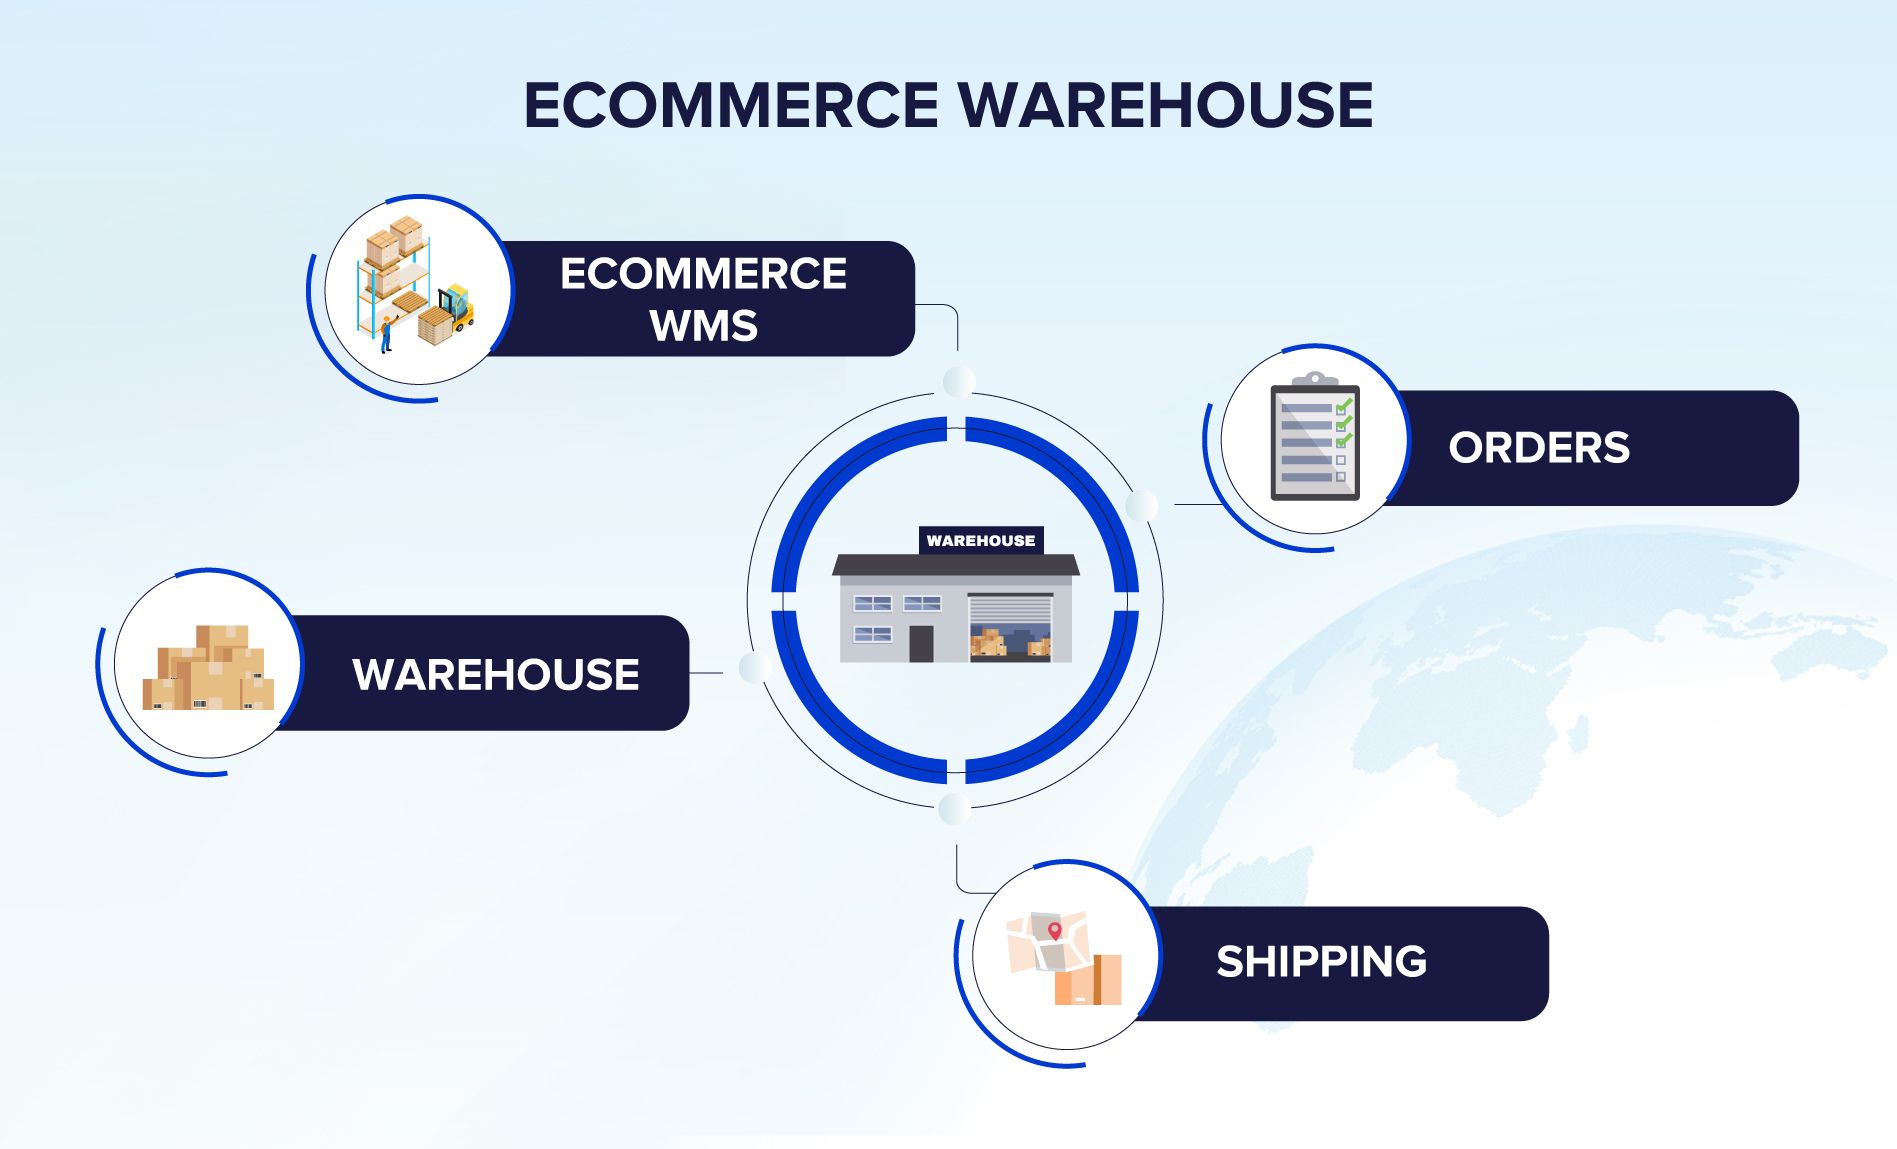 eCommerce warehouse management